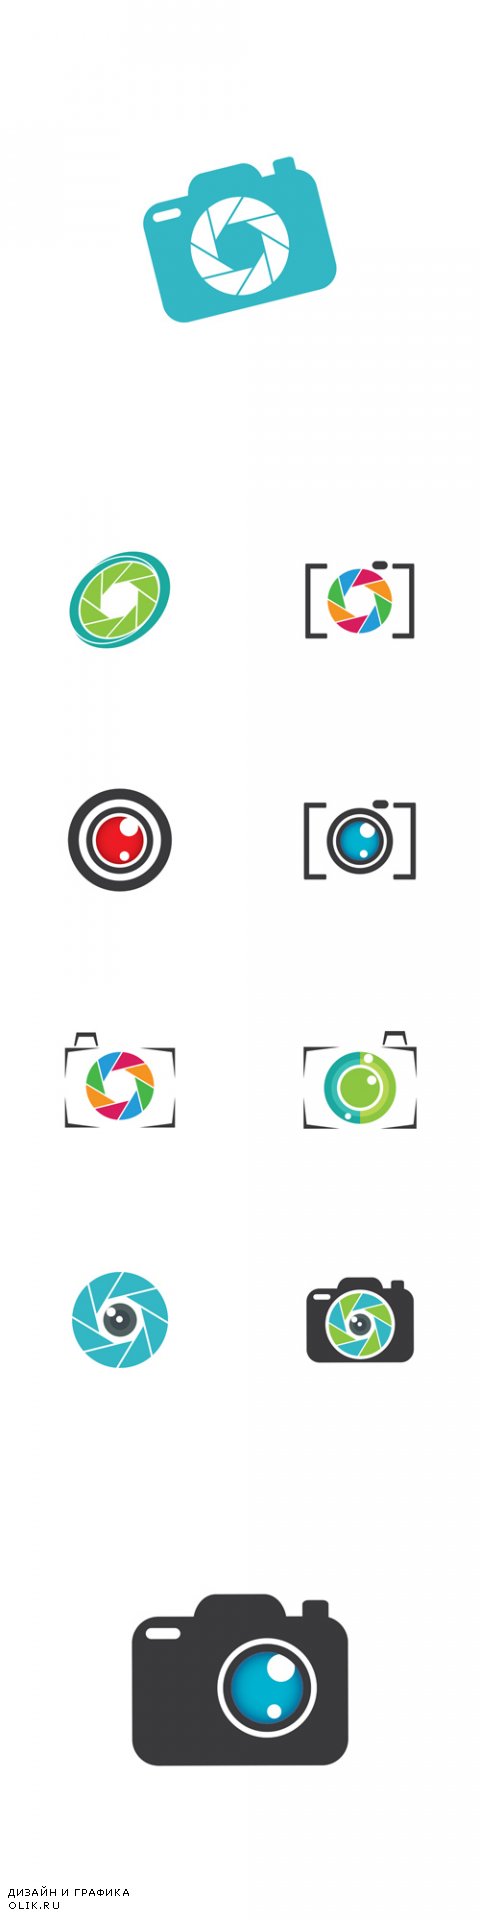 Vector Photography Logos